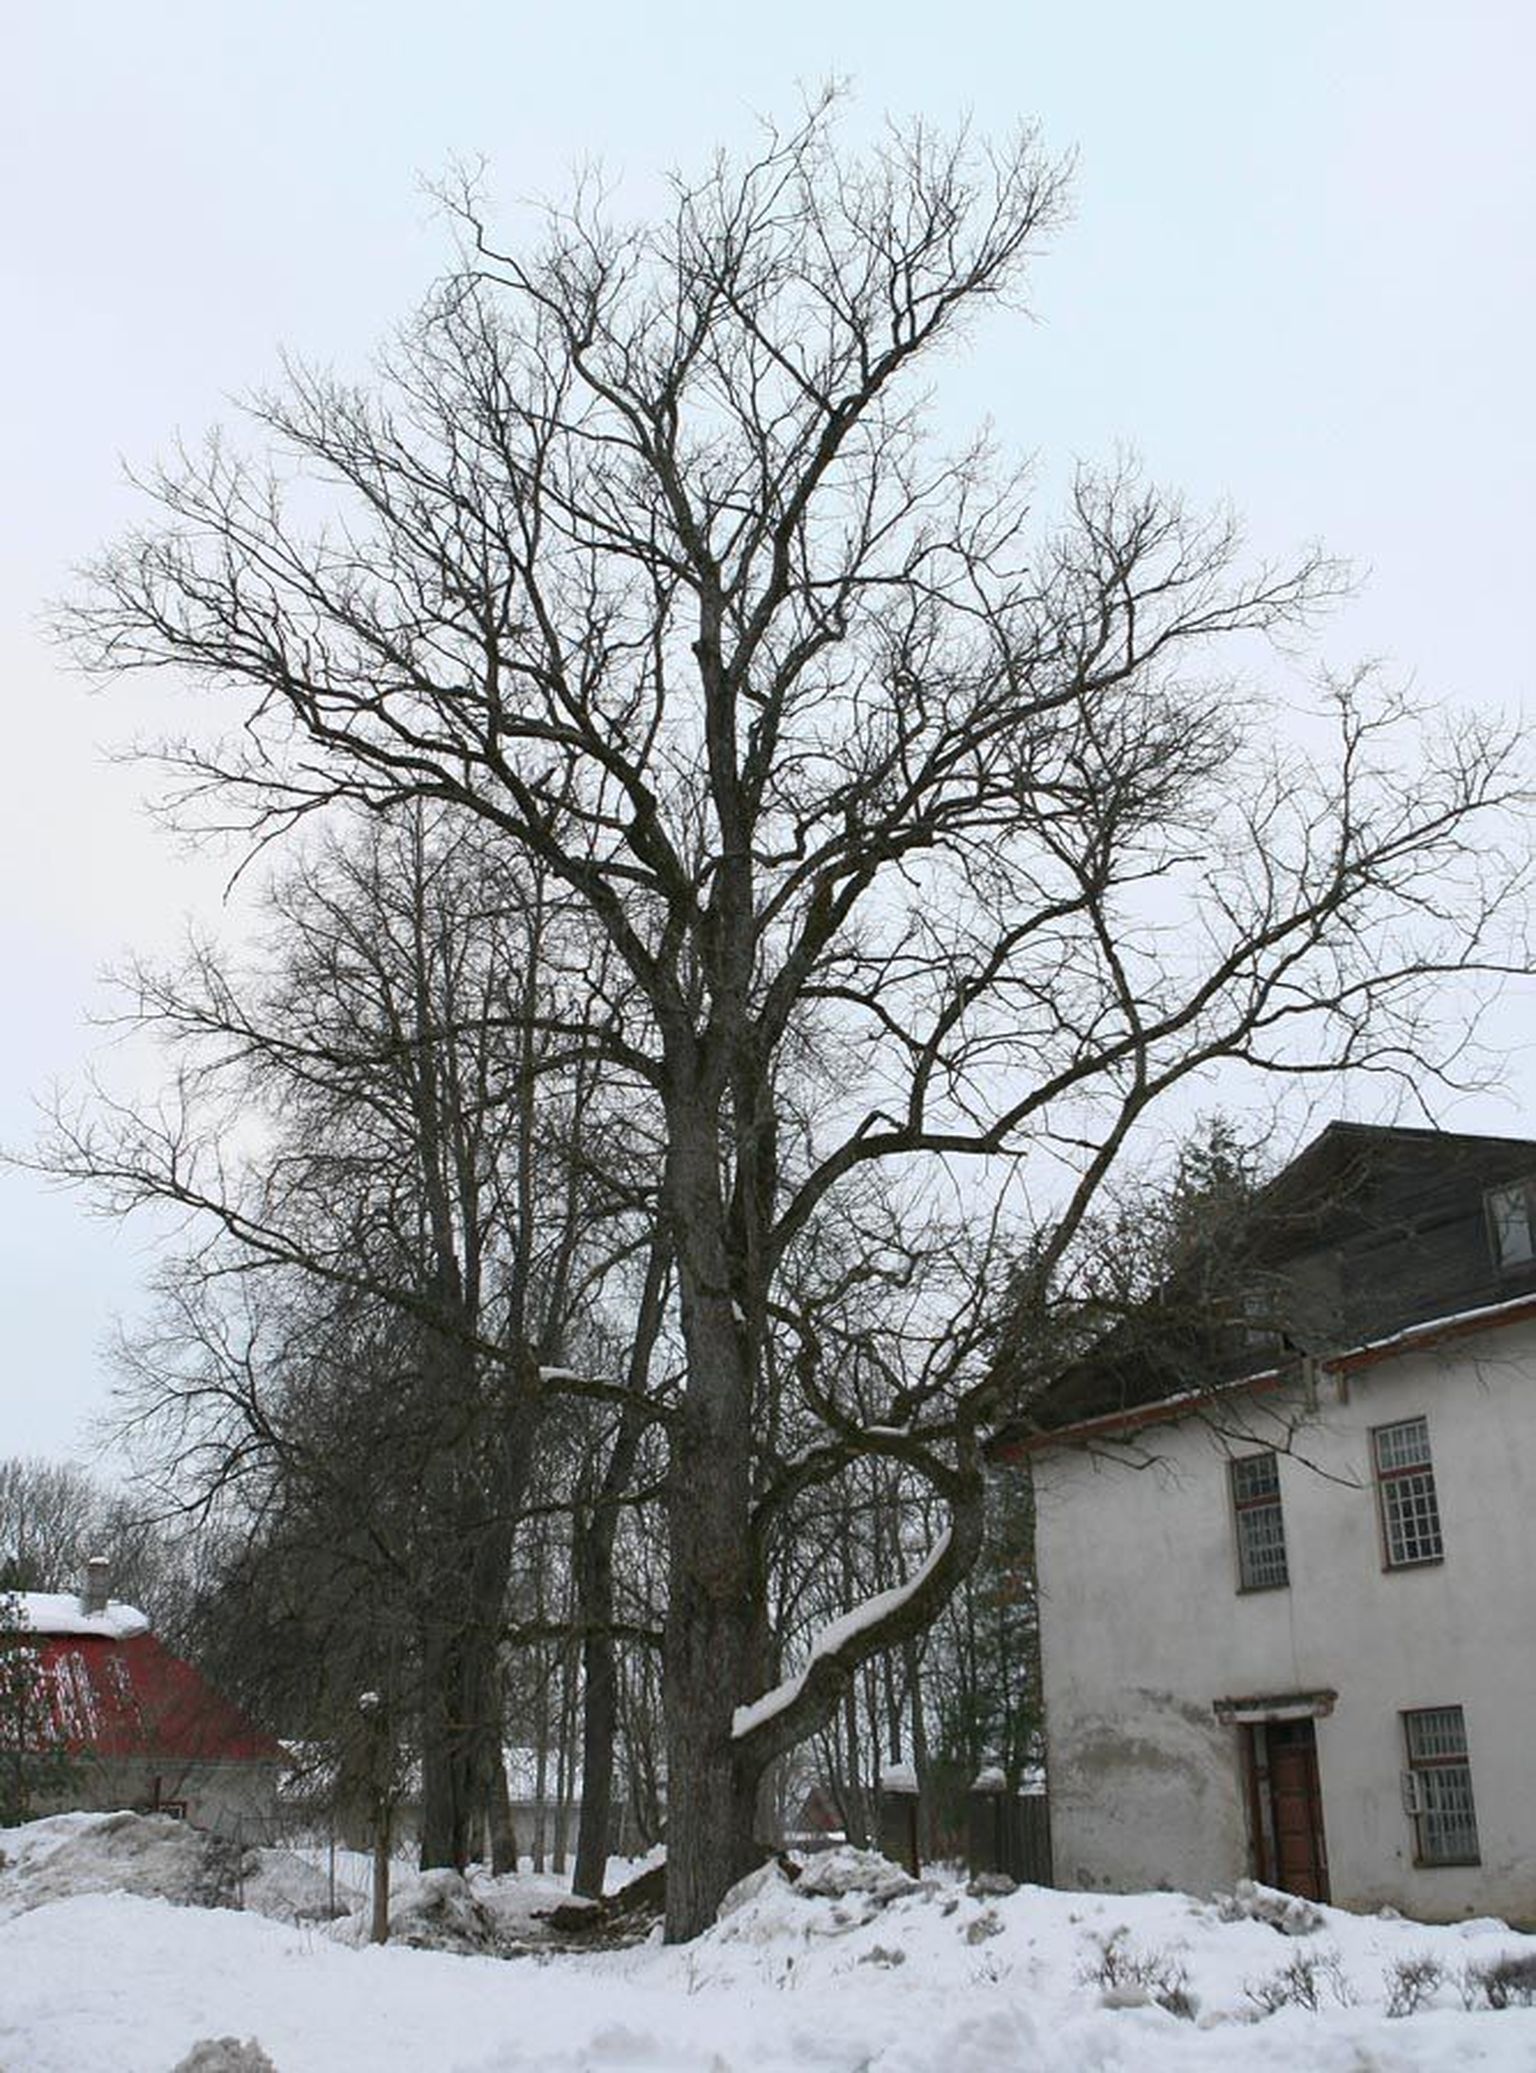 Künnapuu on jäänud Eesti metsades veel haruldasemaks kui teine meie looduslik jalakaliik, harilik jalakas. Parkides kohtab võimsa võraga puid siiski päris sageli. Pildil olev künnapuu kasvab Jämejala pargis.